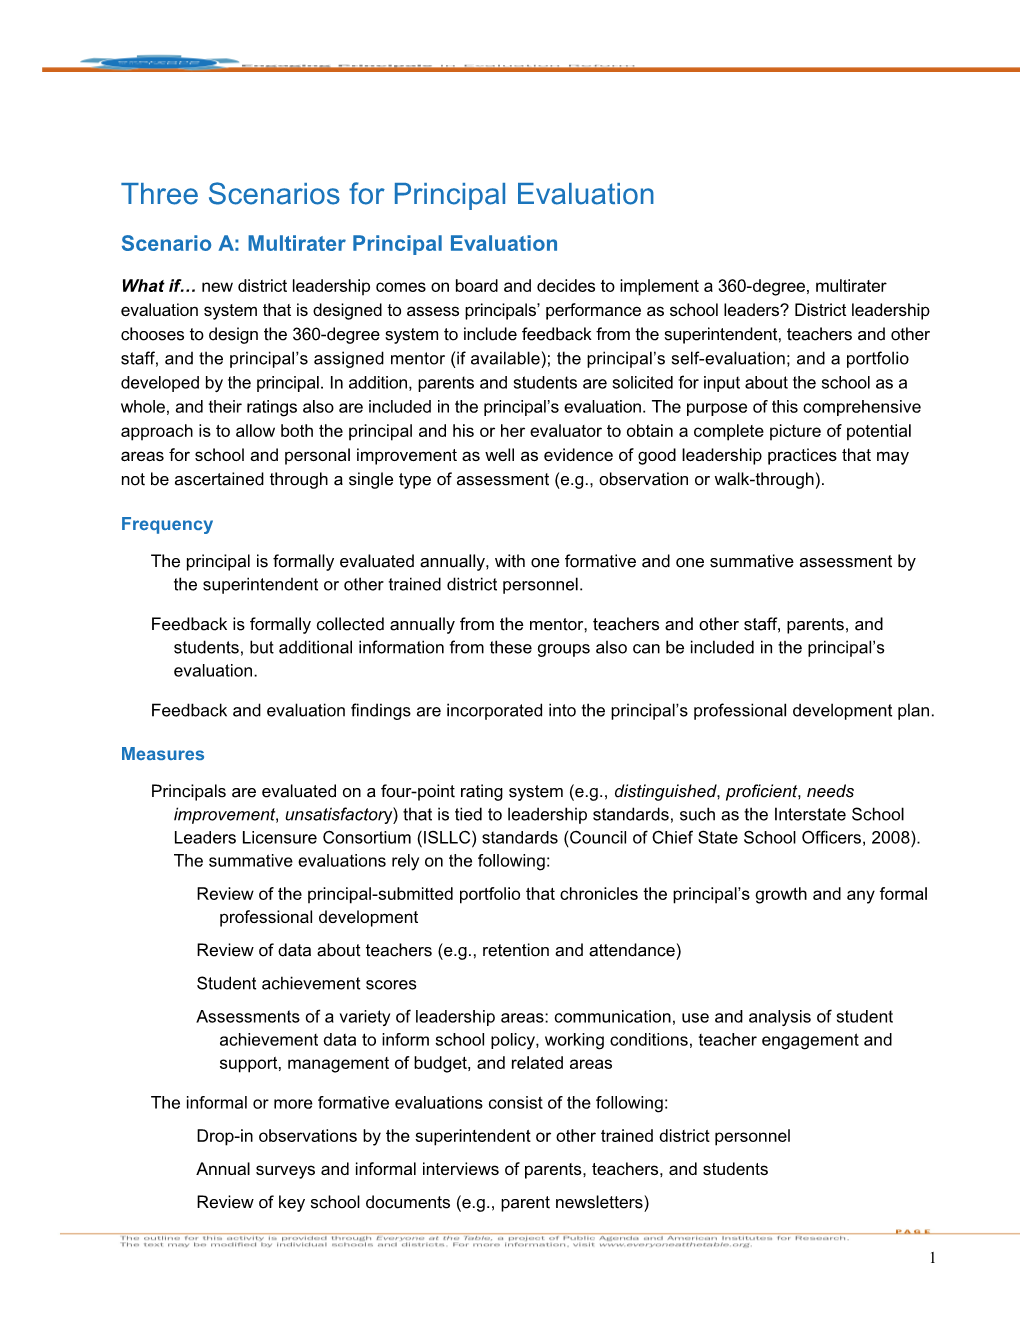 Scenario A: Multirater Principal Evaluation